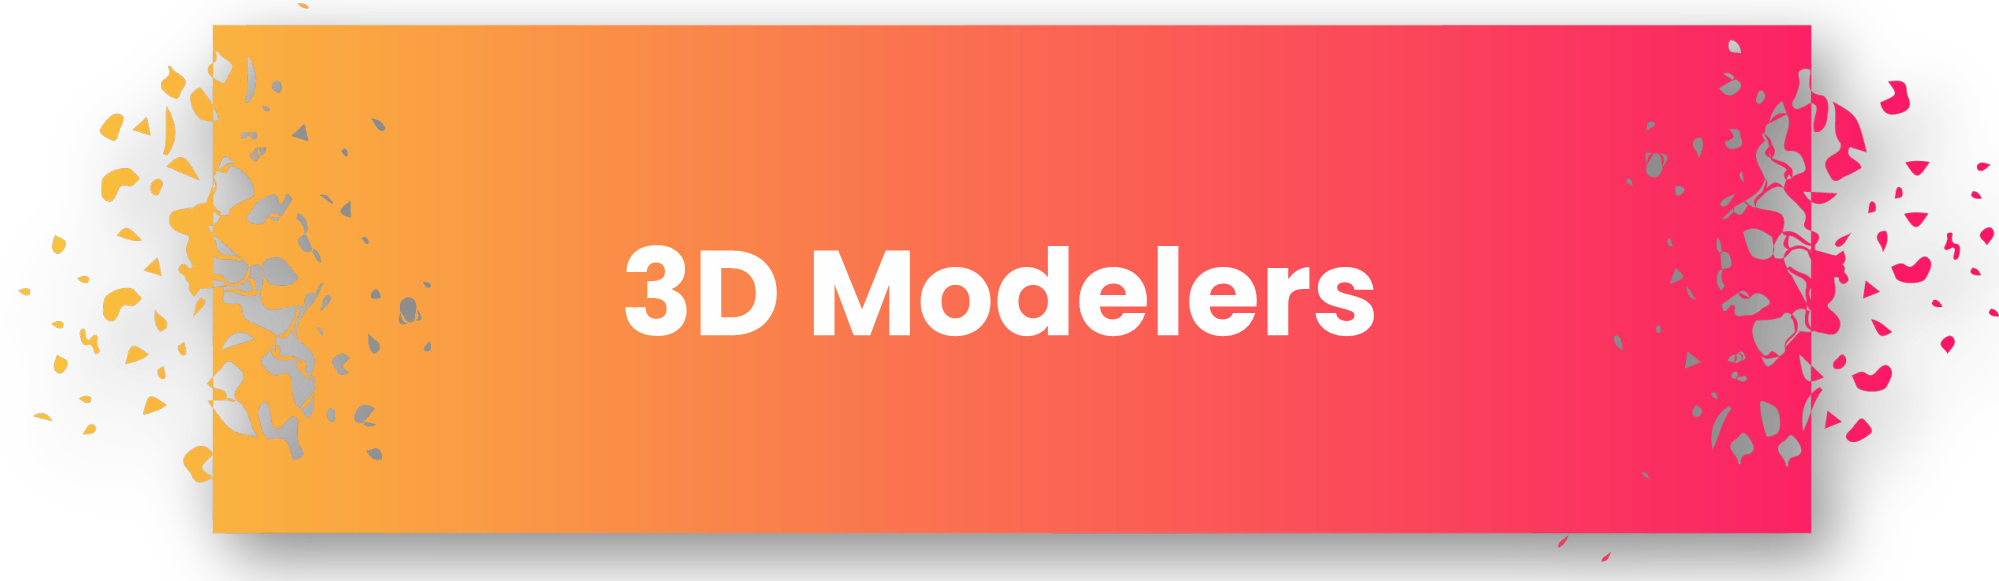 3D Modelers